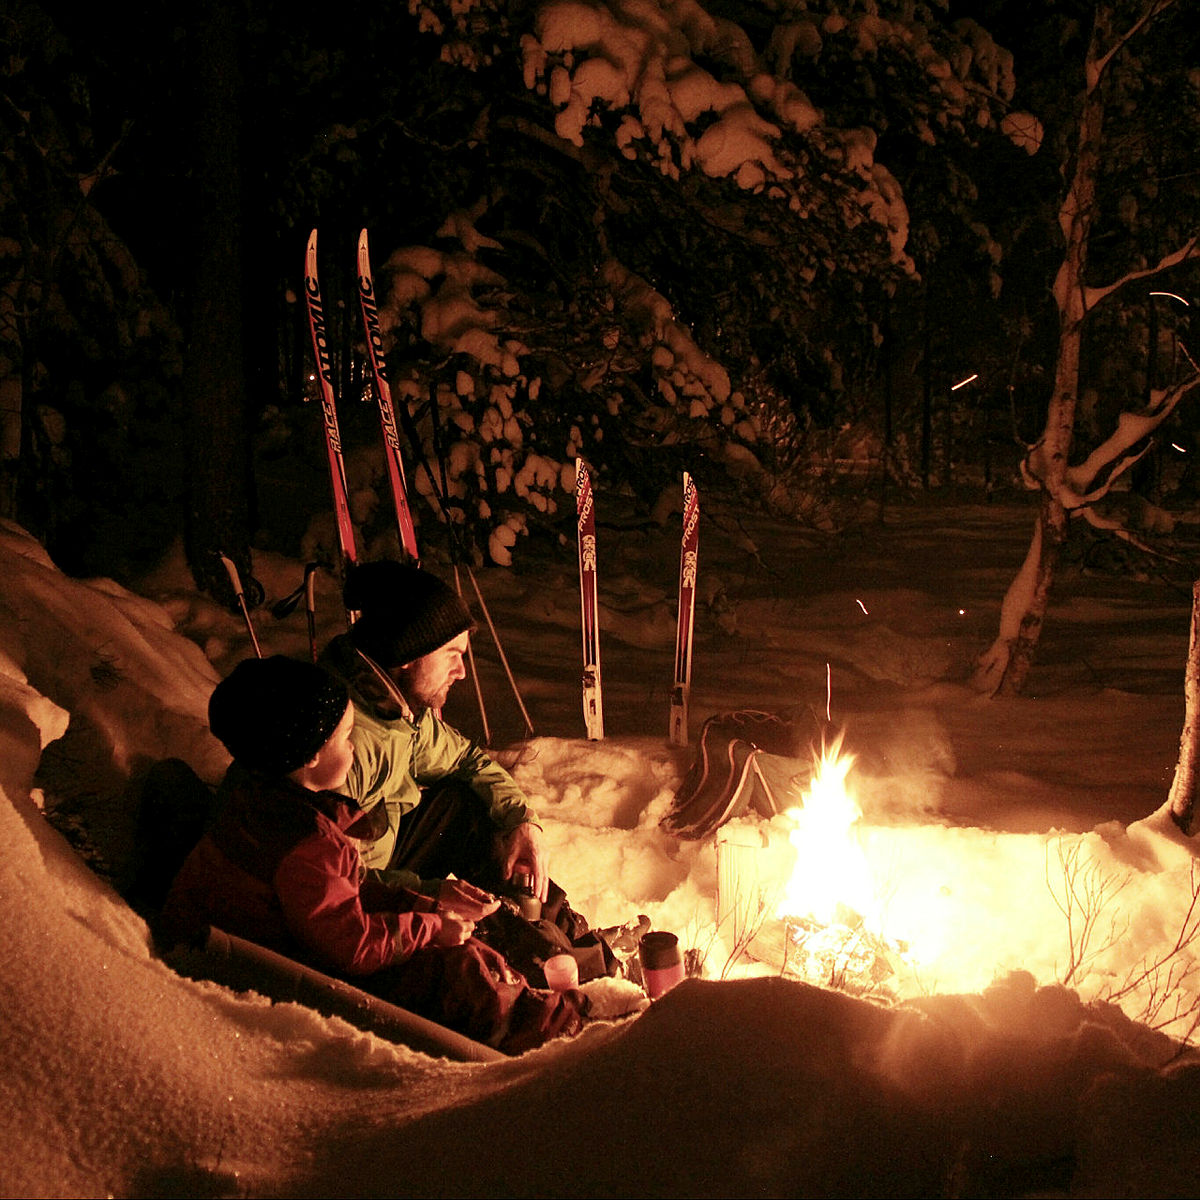 Snø, ski, tur i mørket og noe varmt på termos passer i kalenderen.